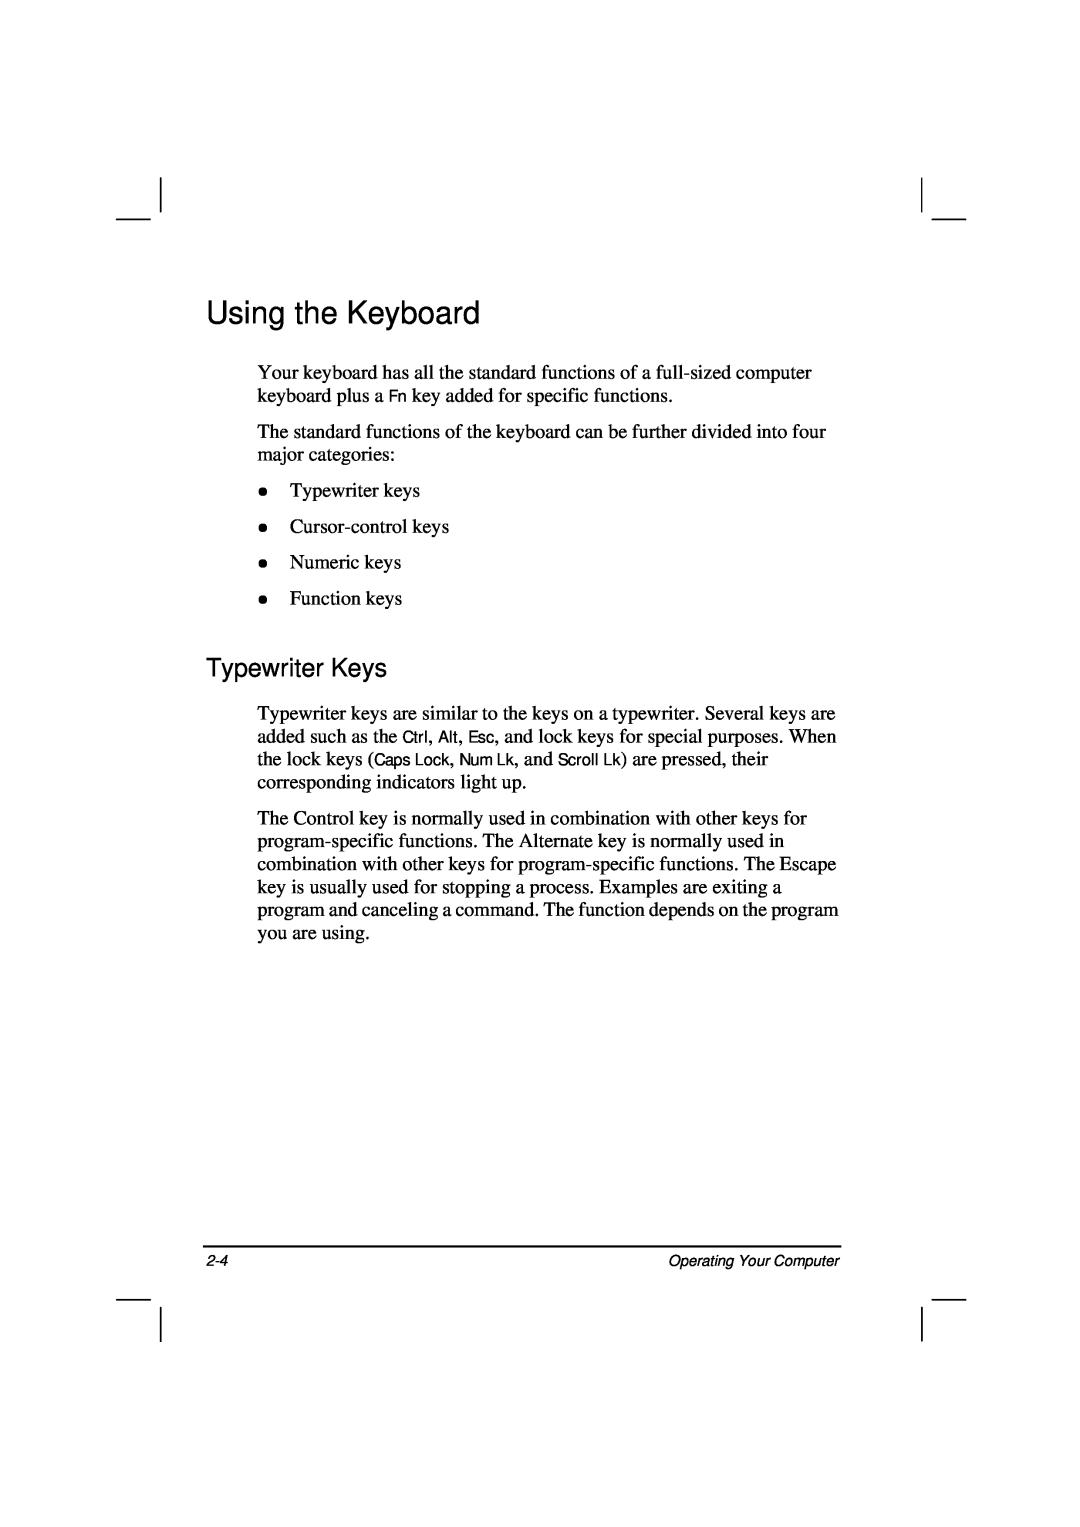 Casio HK1223 owner manual Using the Keyboard, Typewriter Keys 